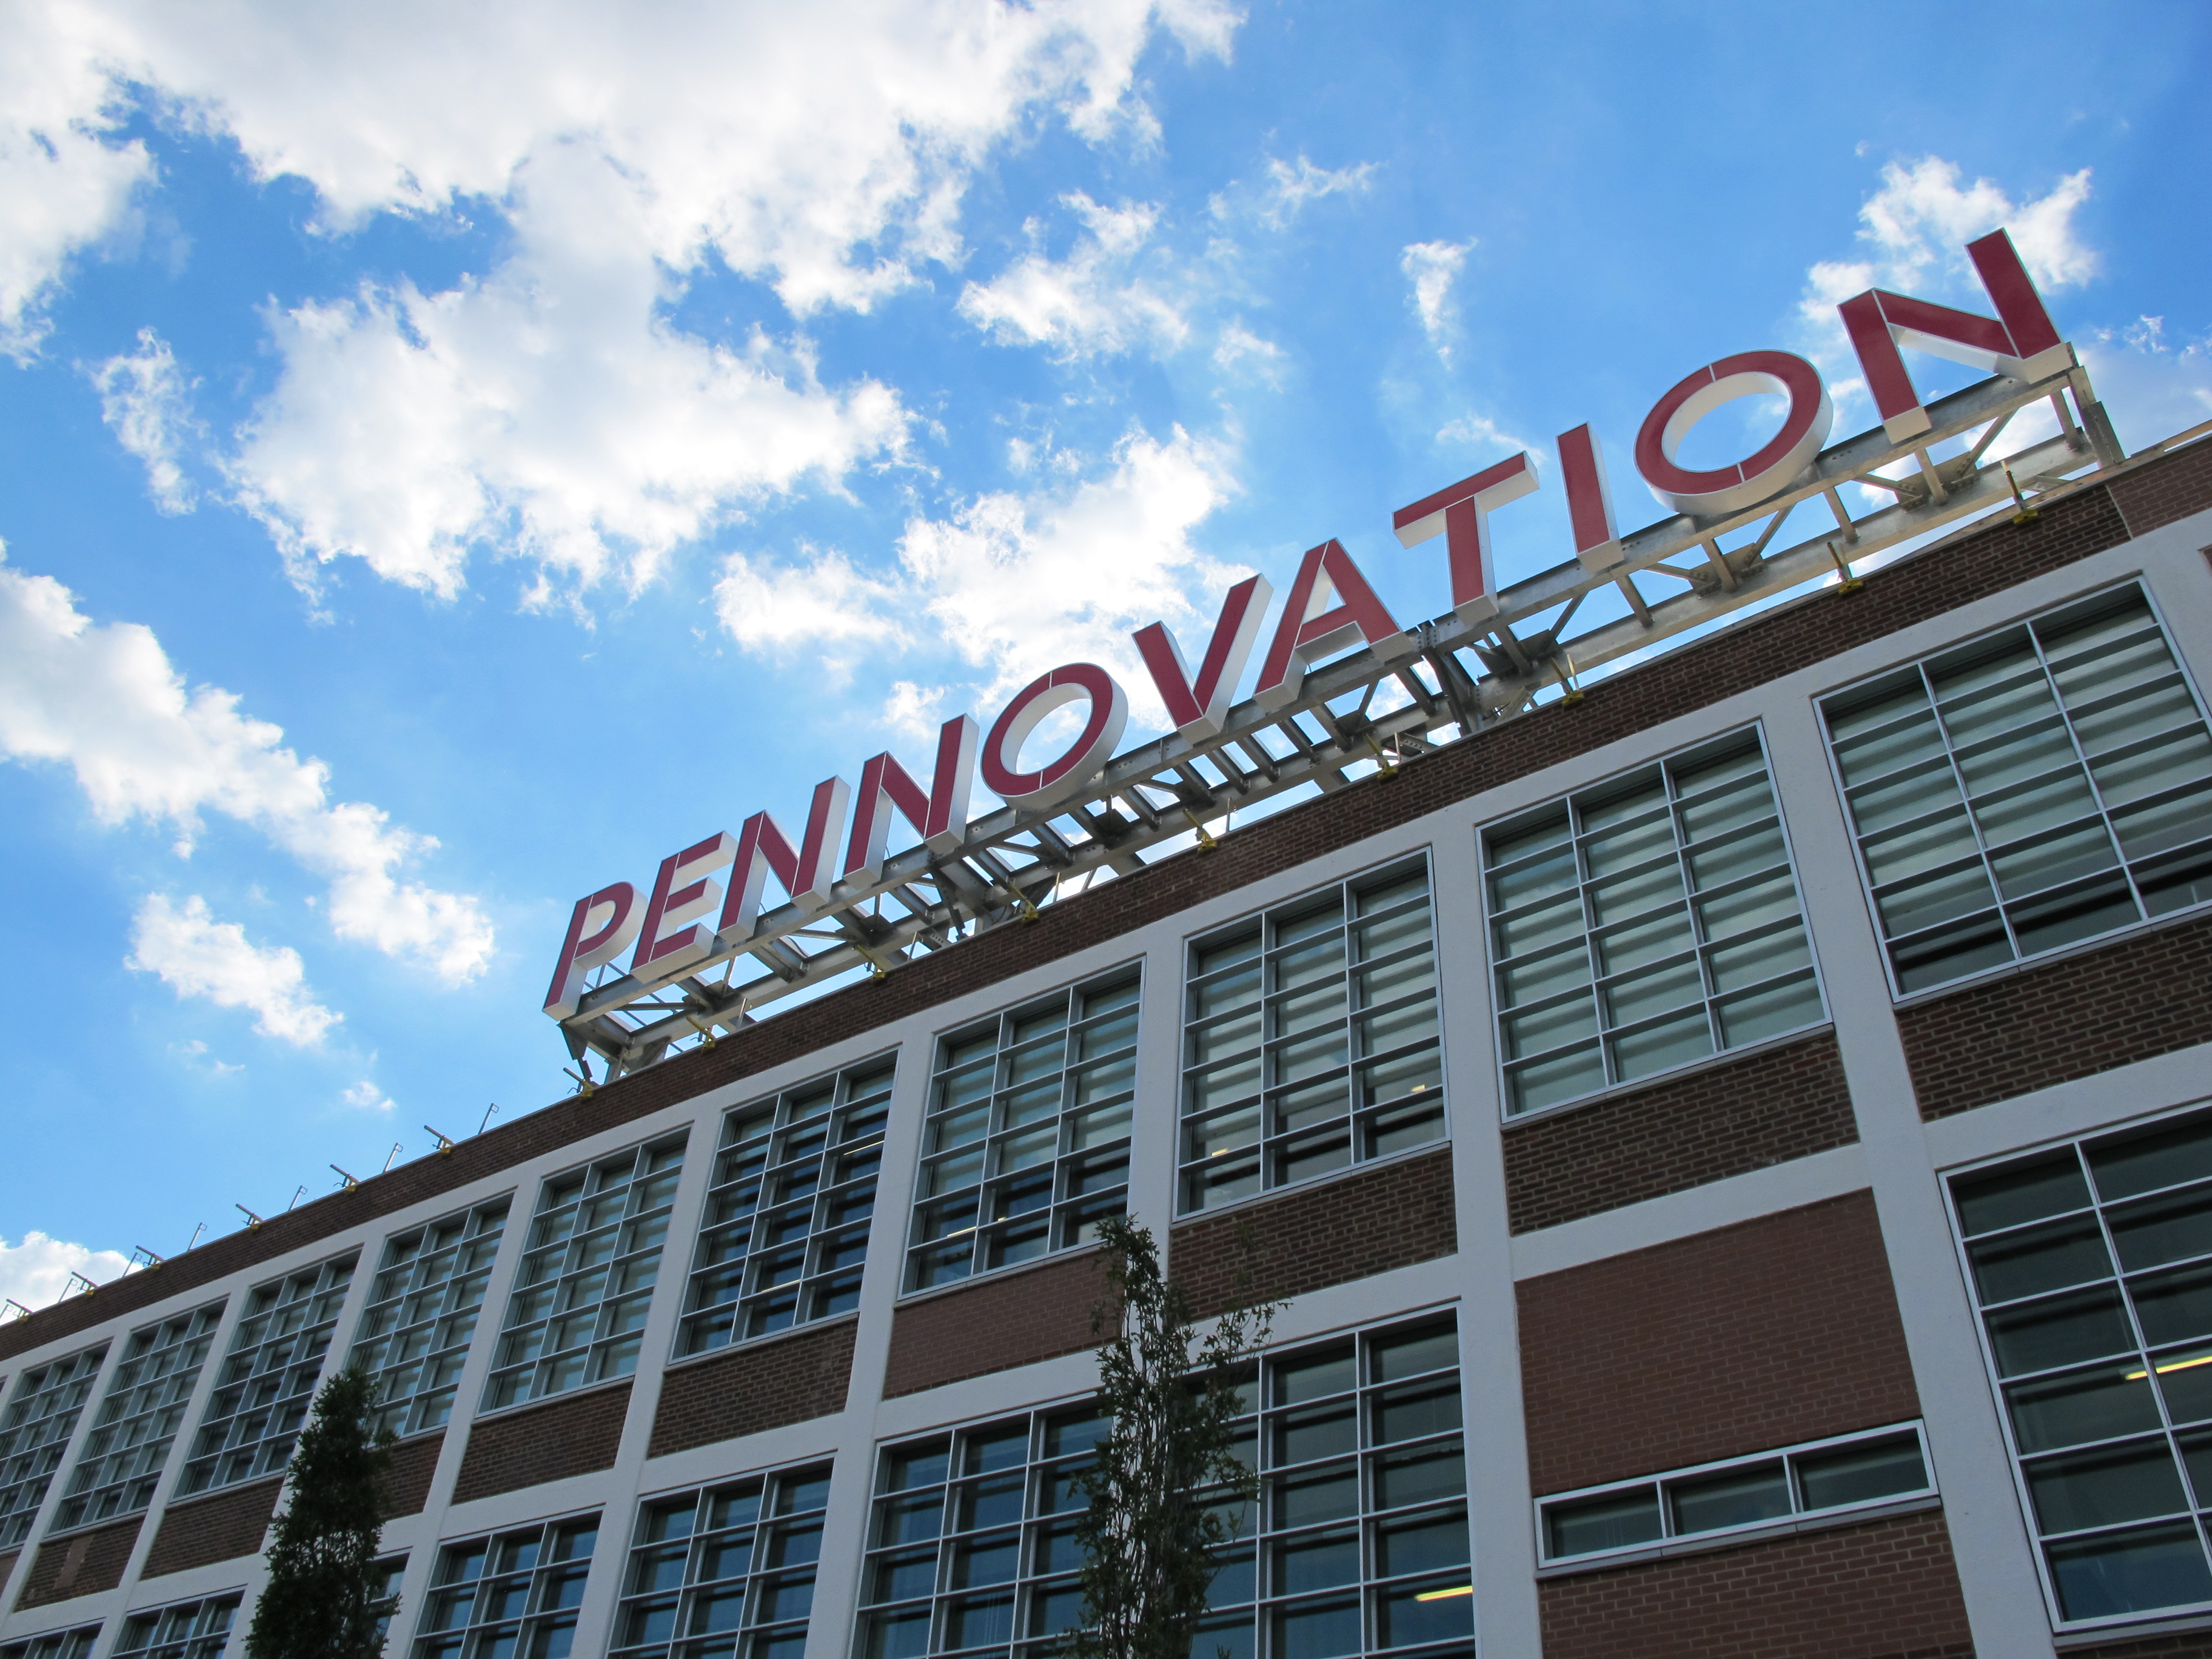 Pennovation Center, August 2016